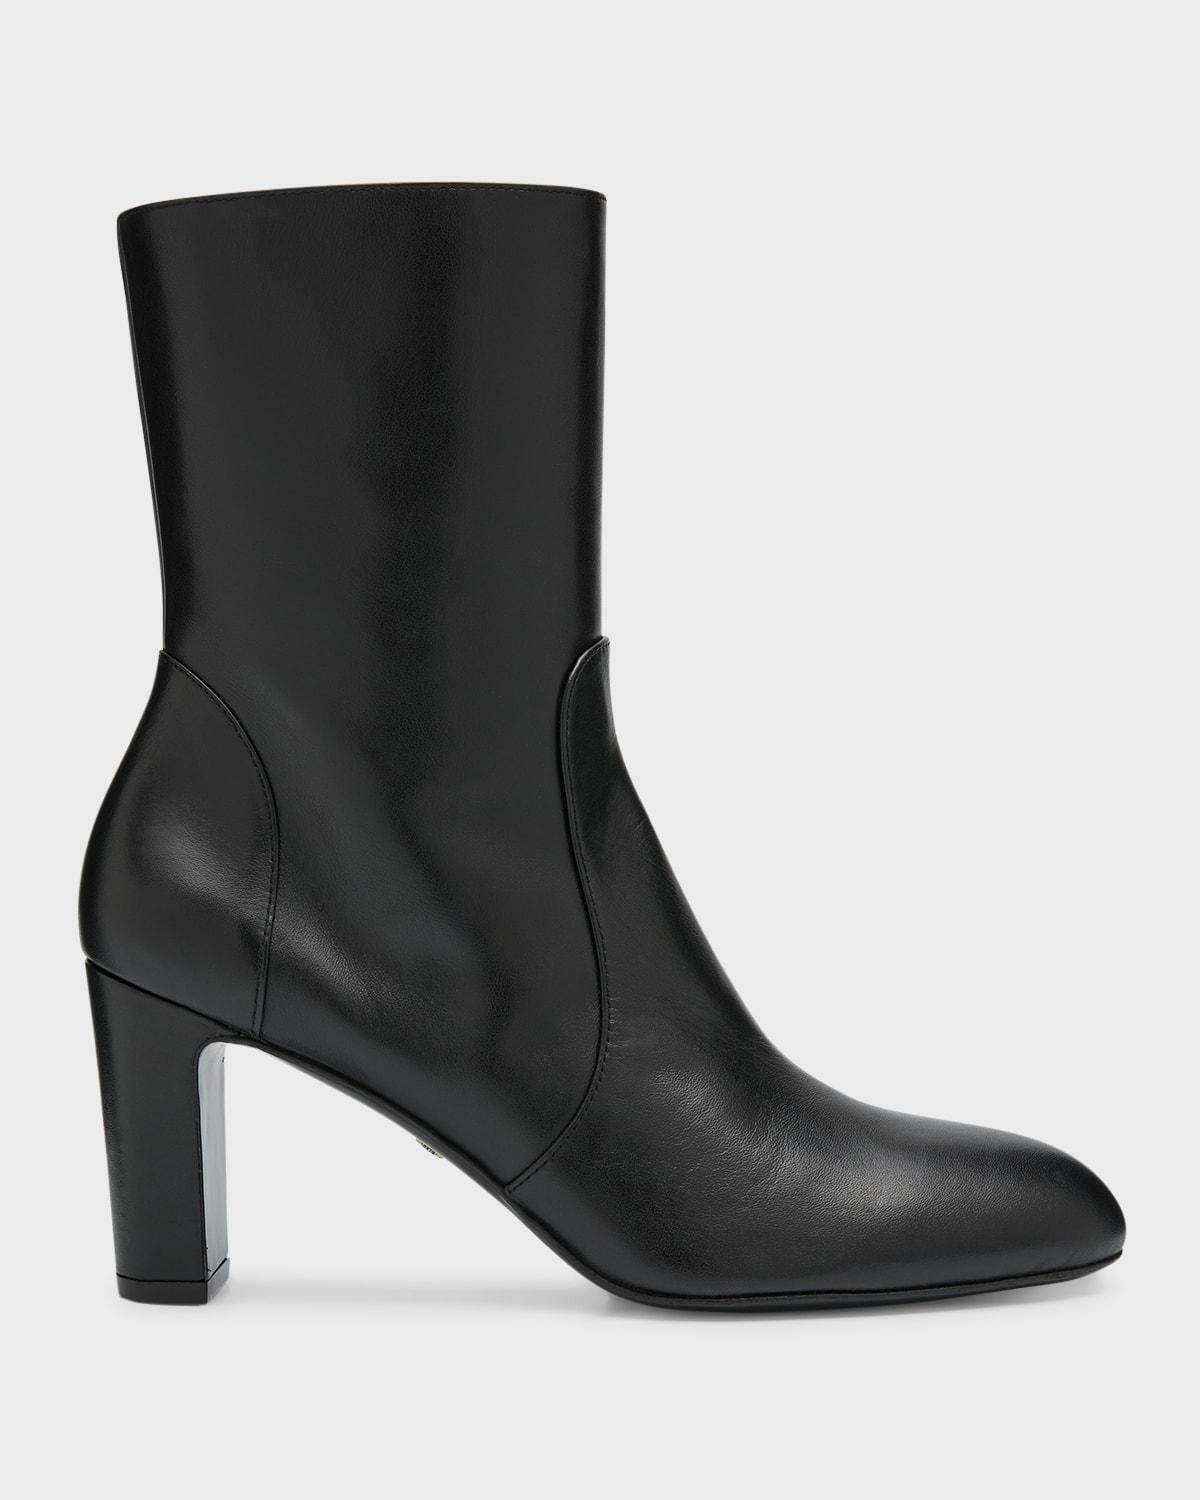 Stuart Weitzman Vida 100 Zip Bootie (Black) Women's Shoes Product Image